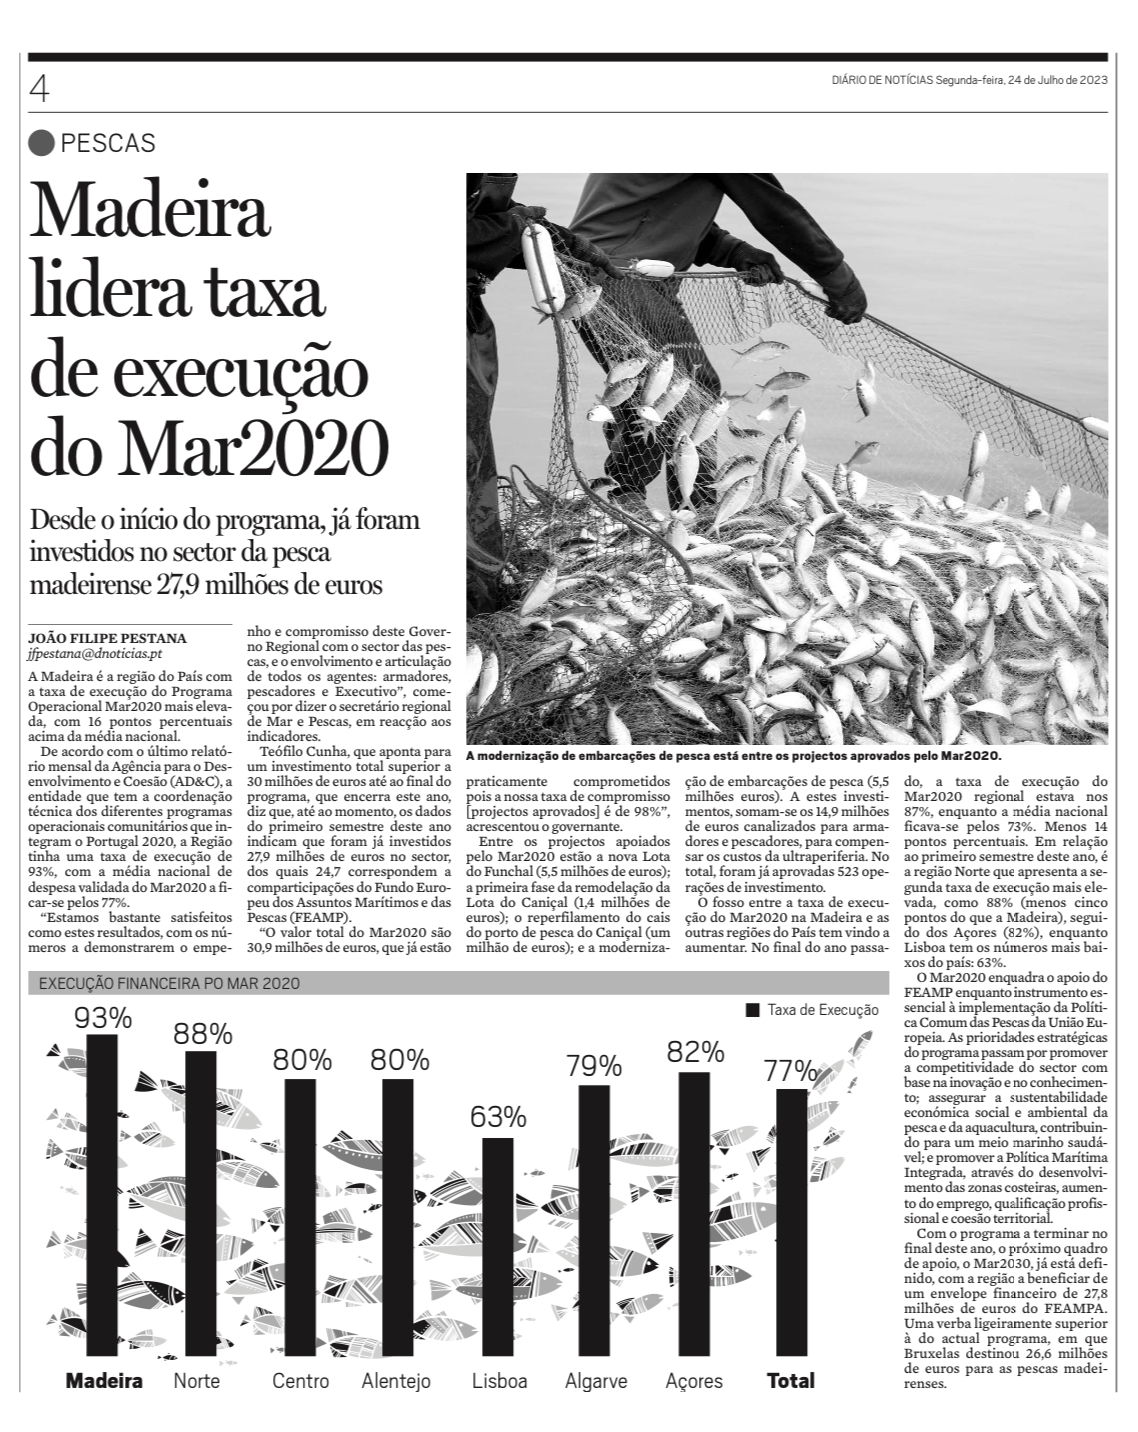 Madeira lidera taxa de execução do programa Mar2020